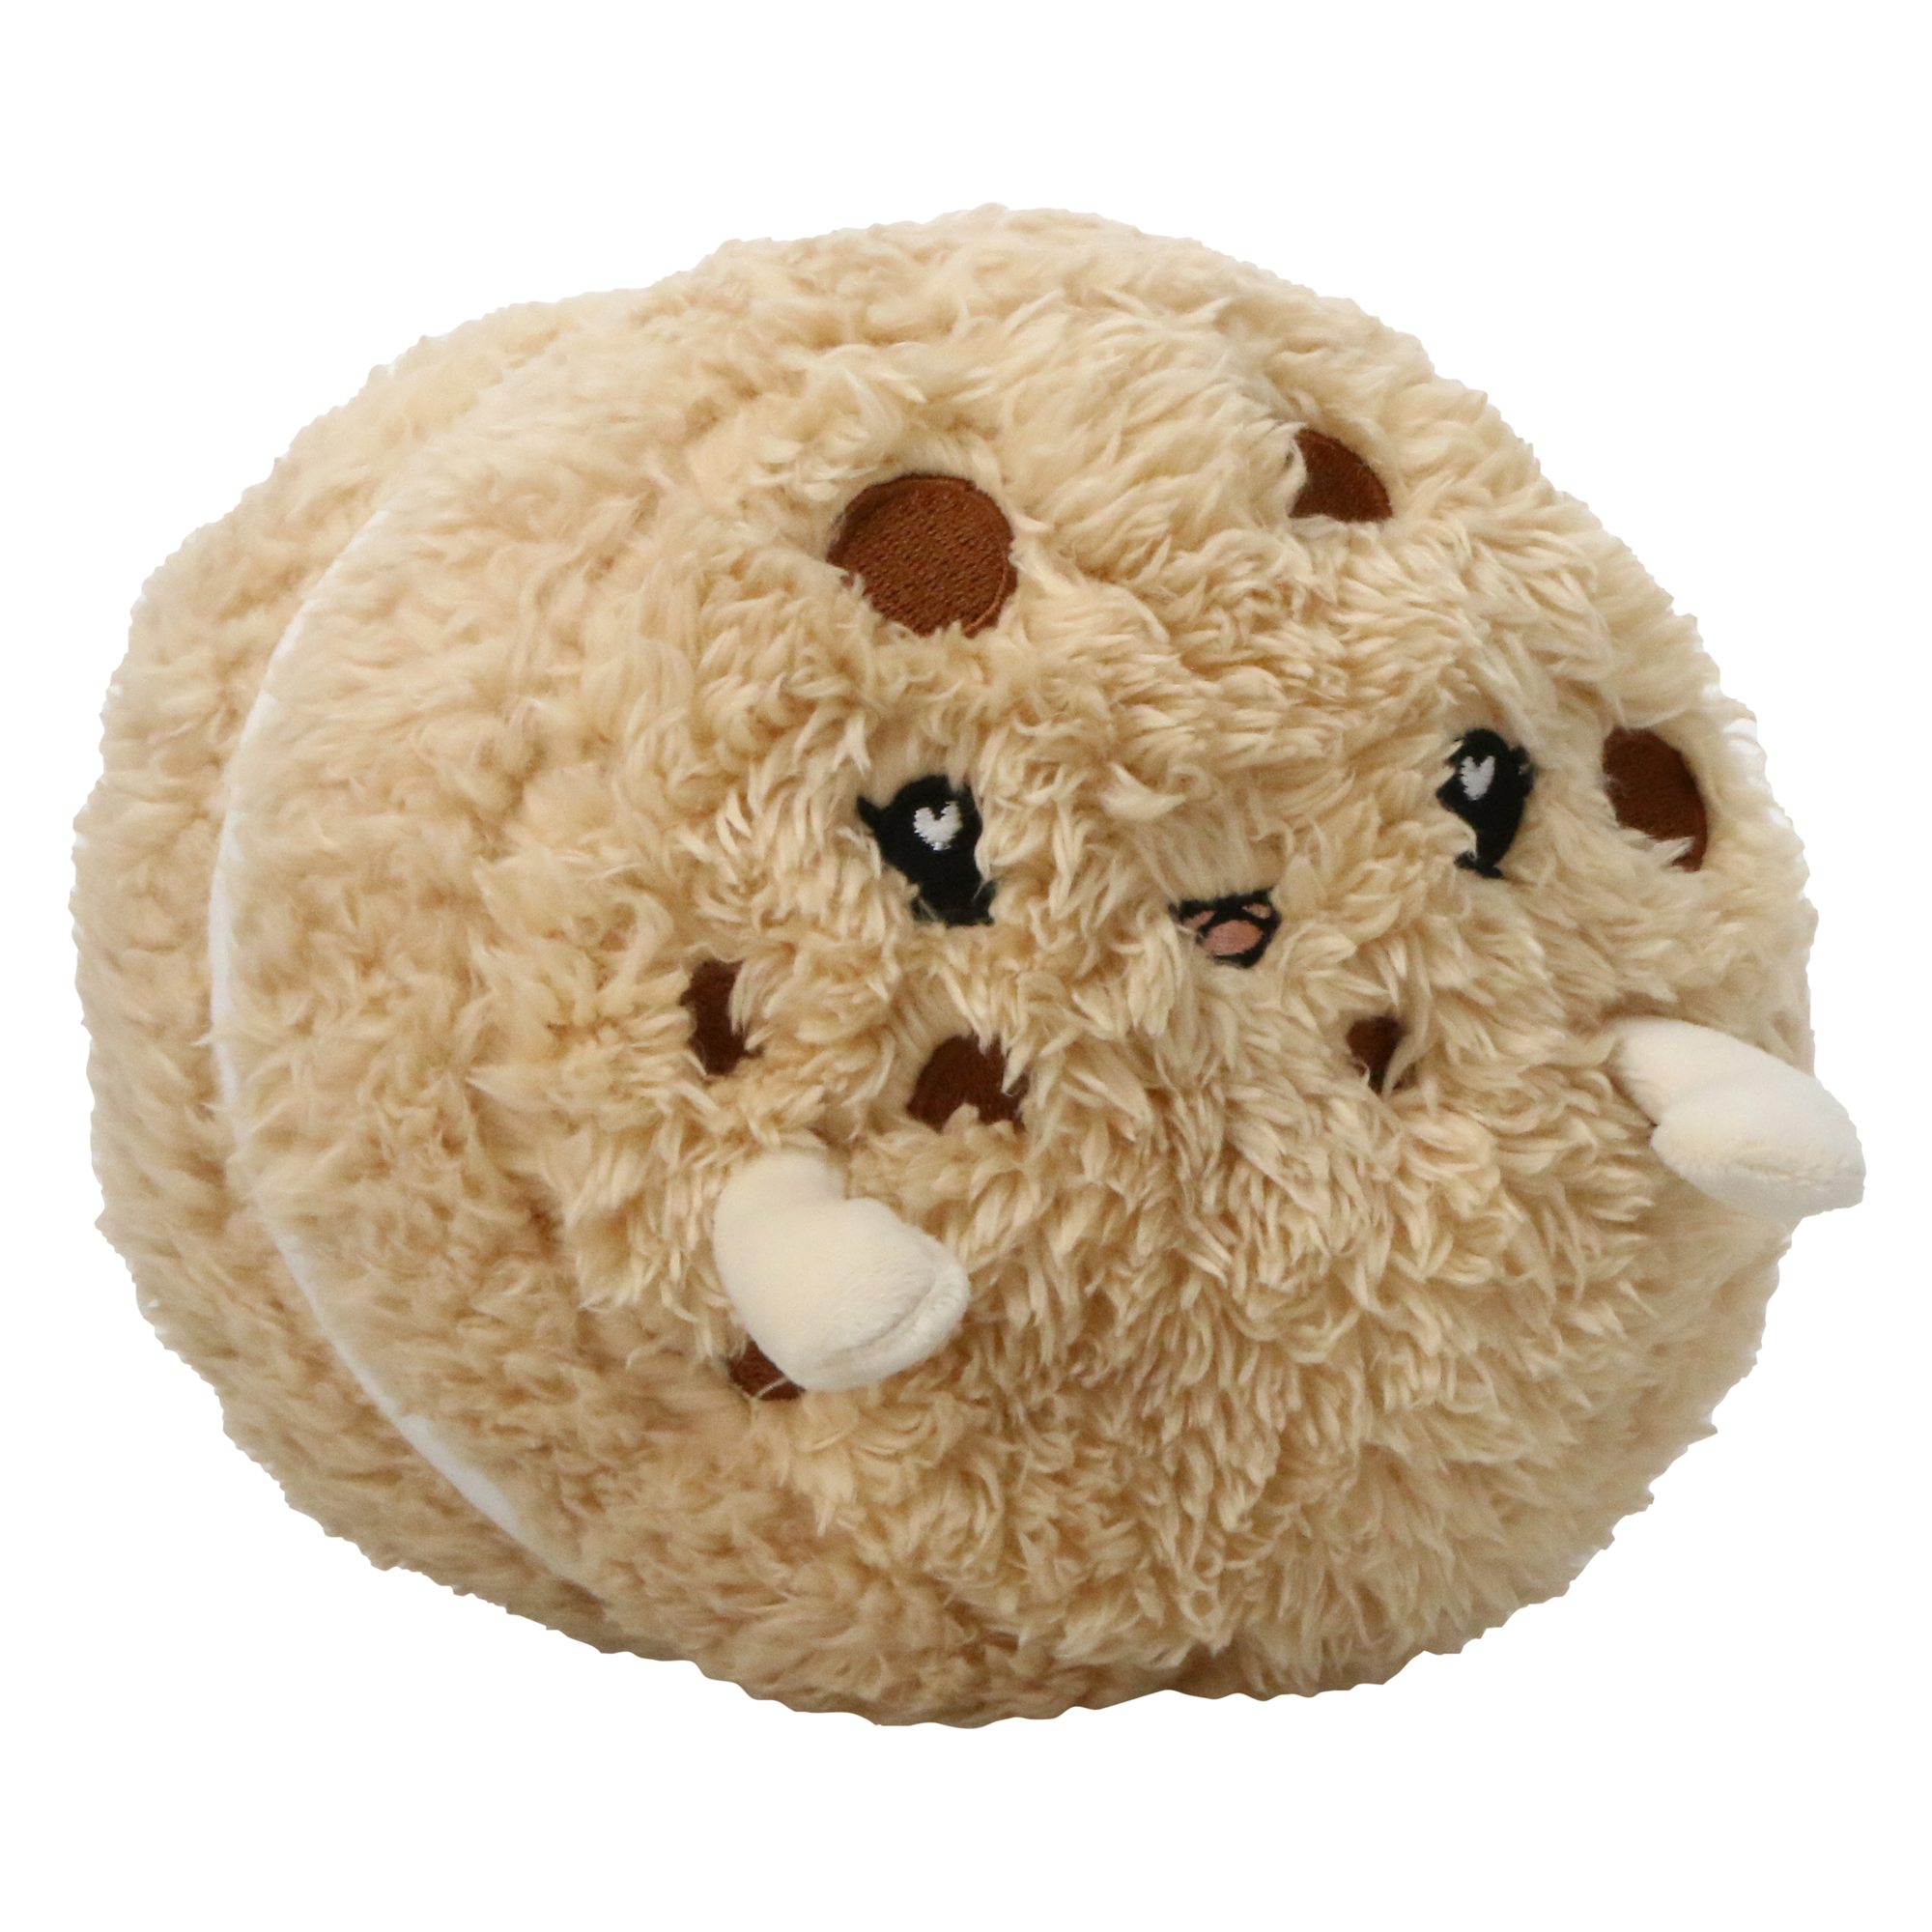 foodie plush stuffed animal 8in